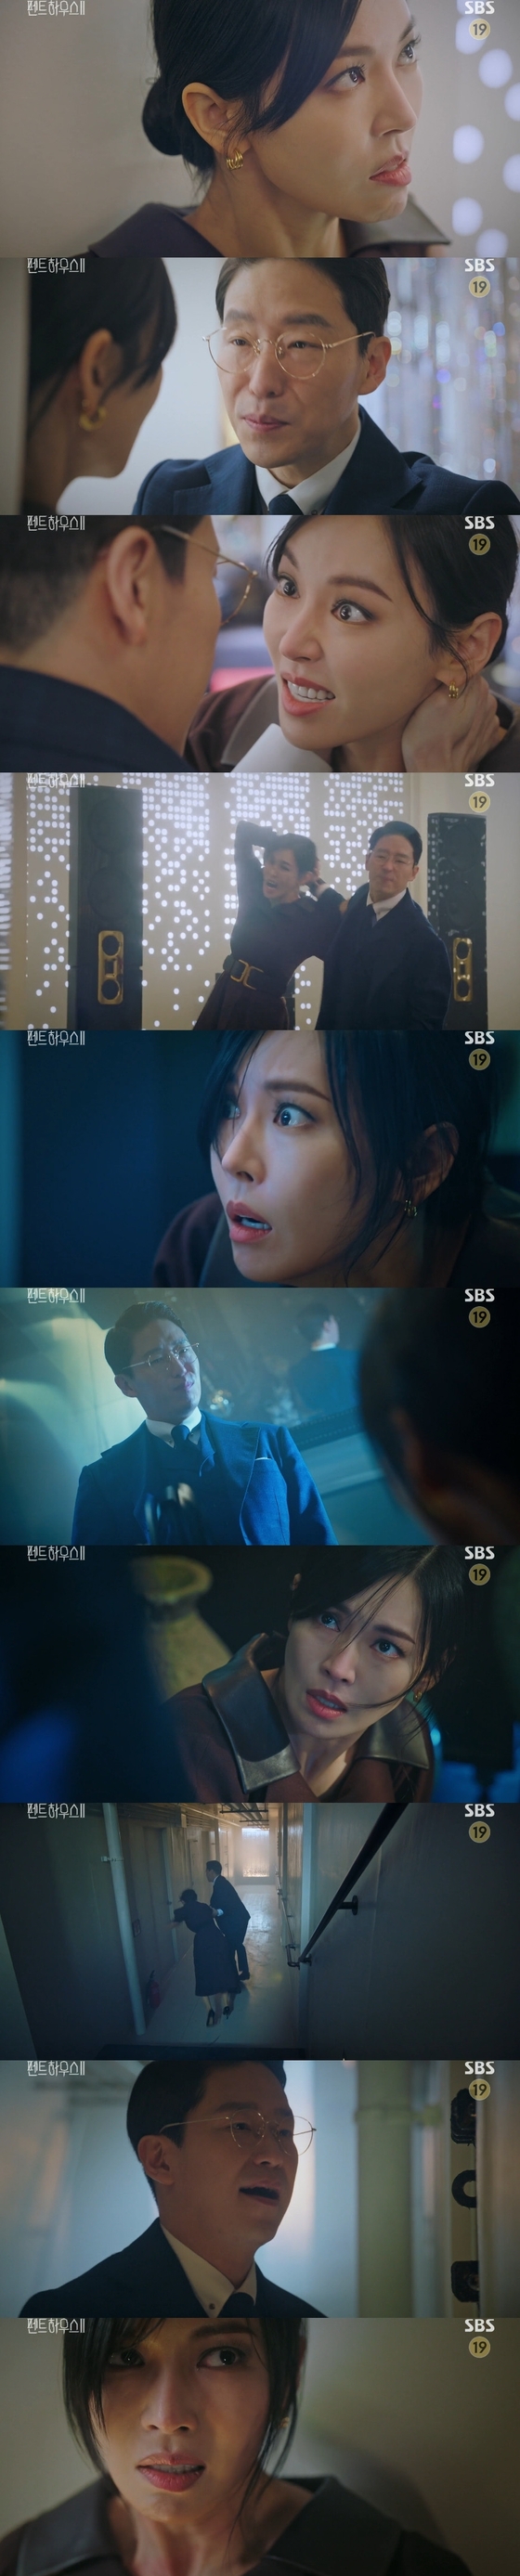 [RE:TV] 김소연 폭행 및 감금 ‘펜트 하우스 2’, 엄격한 악행 기준 대체